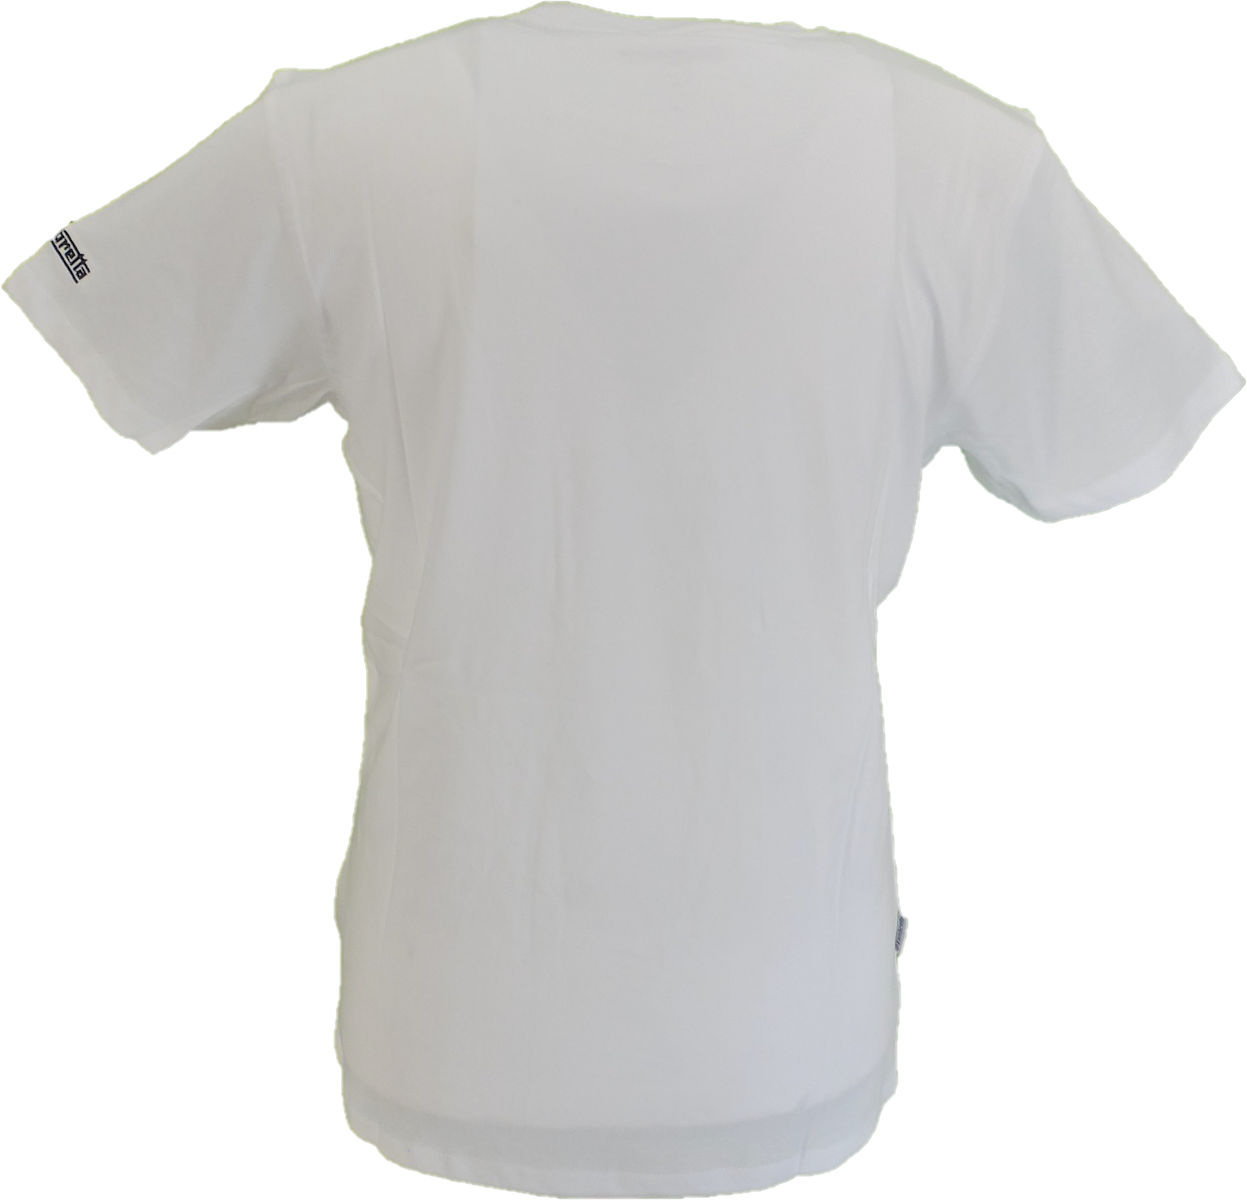 Lambretta Herren-Retro-T-Shirt mit Schachbrettmuster in Weiß/Schwarz